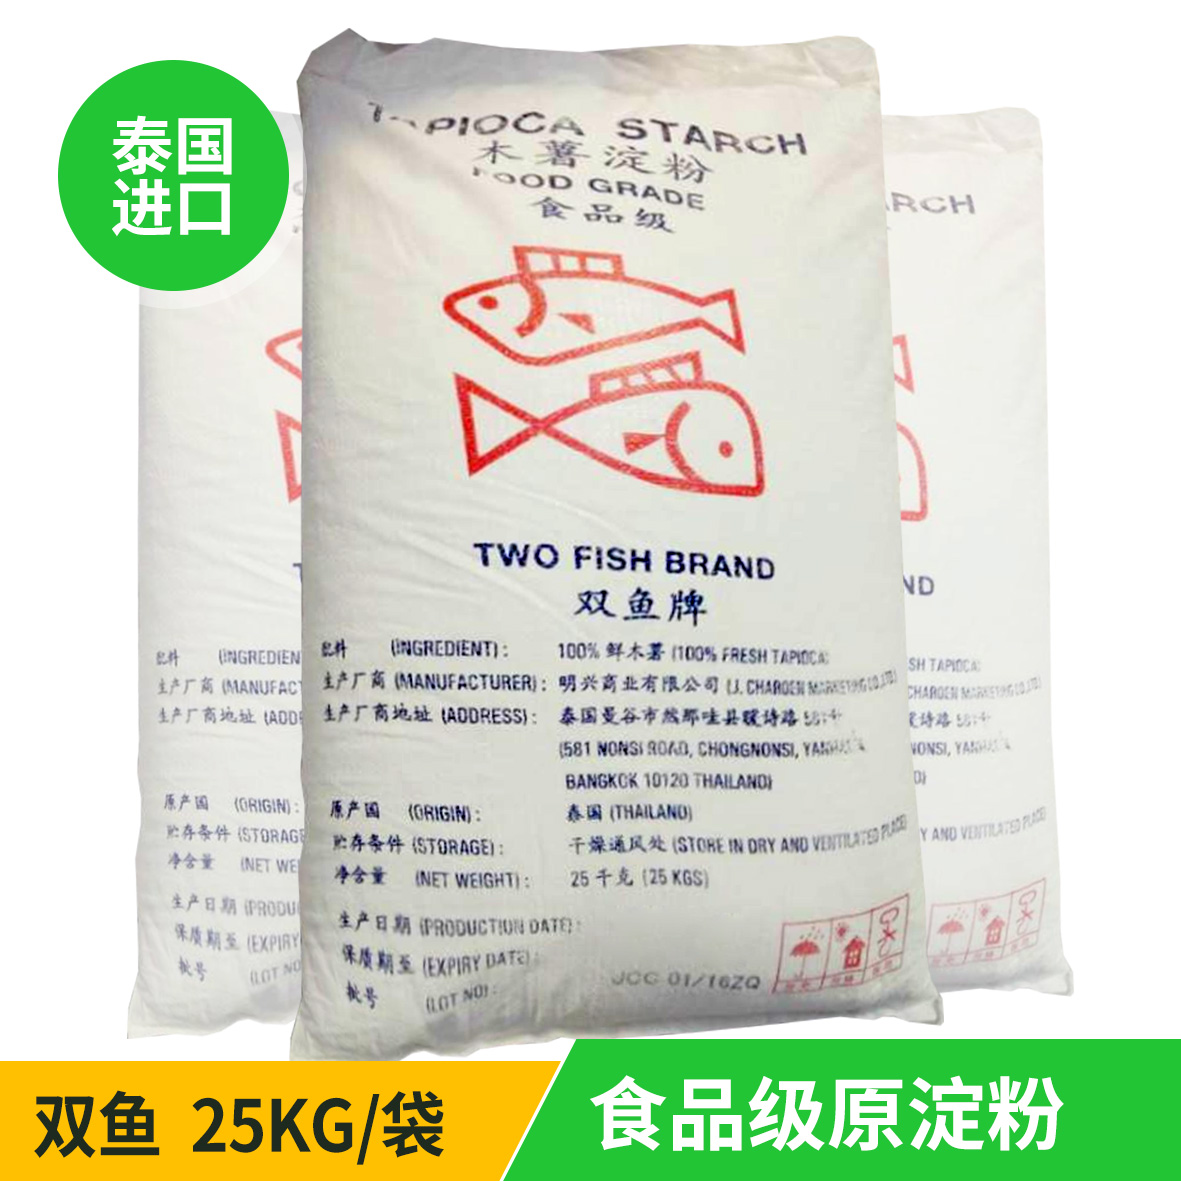 泰国原装进口 双鱼牌 木薯淀粉 食品级木薯粉 变性淀粉 一手货源 批发商 25kg/袋 丸子、汤圆、粉丝、粉皮制作原料